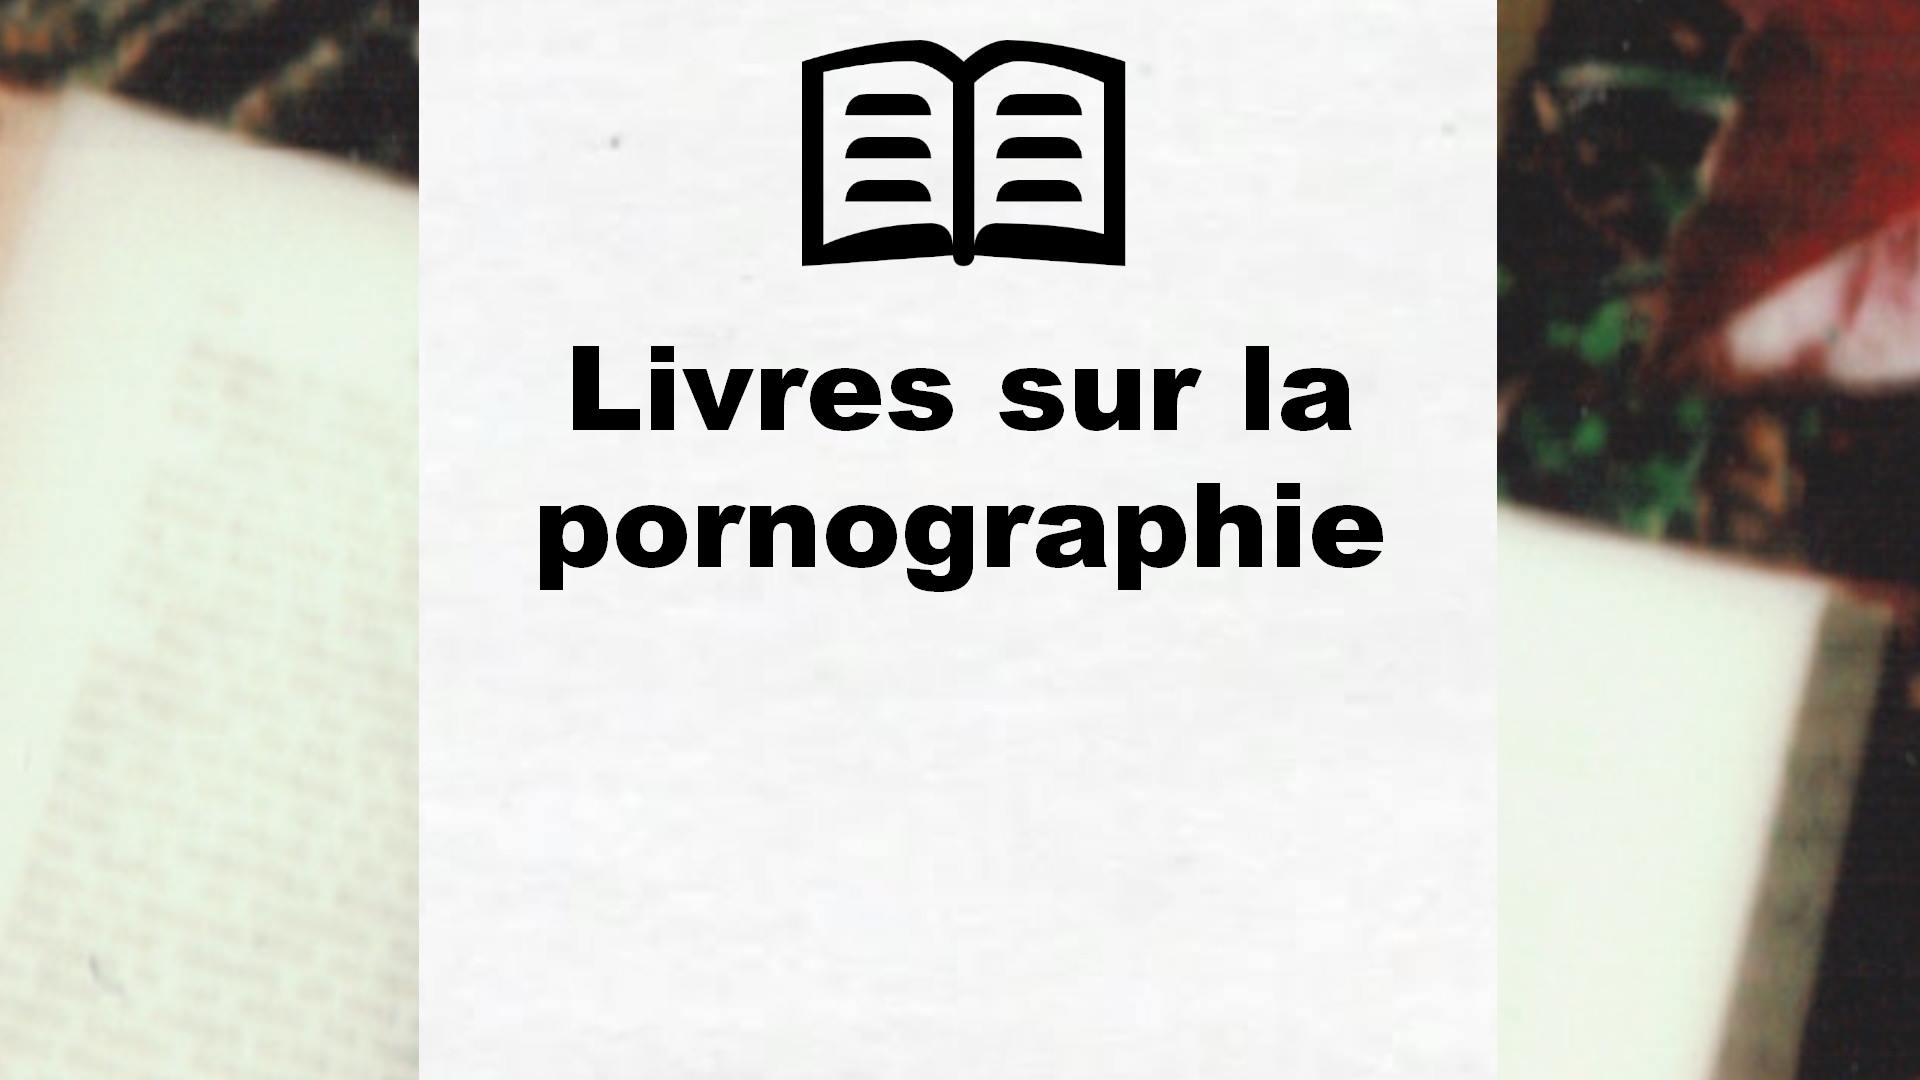 Livres sur la pornographie